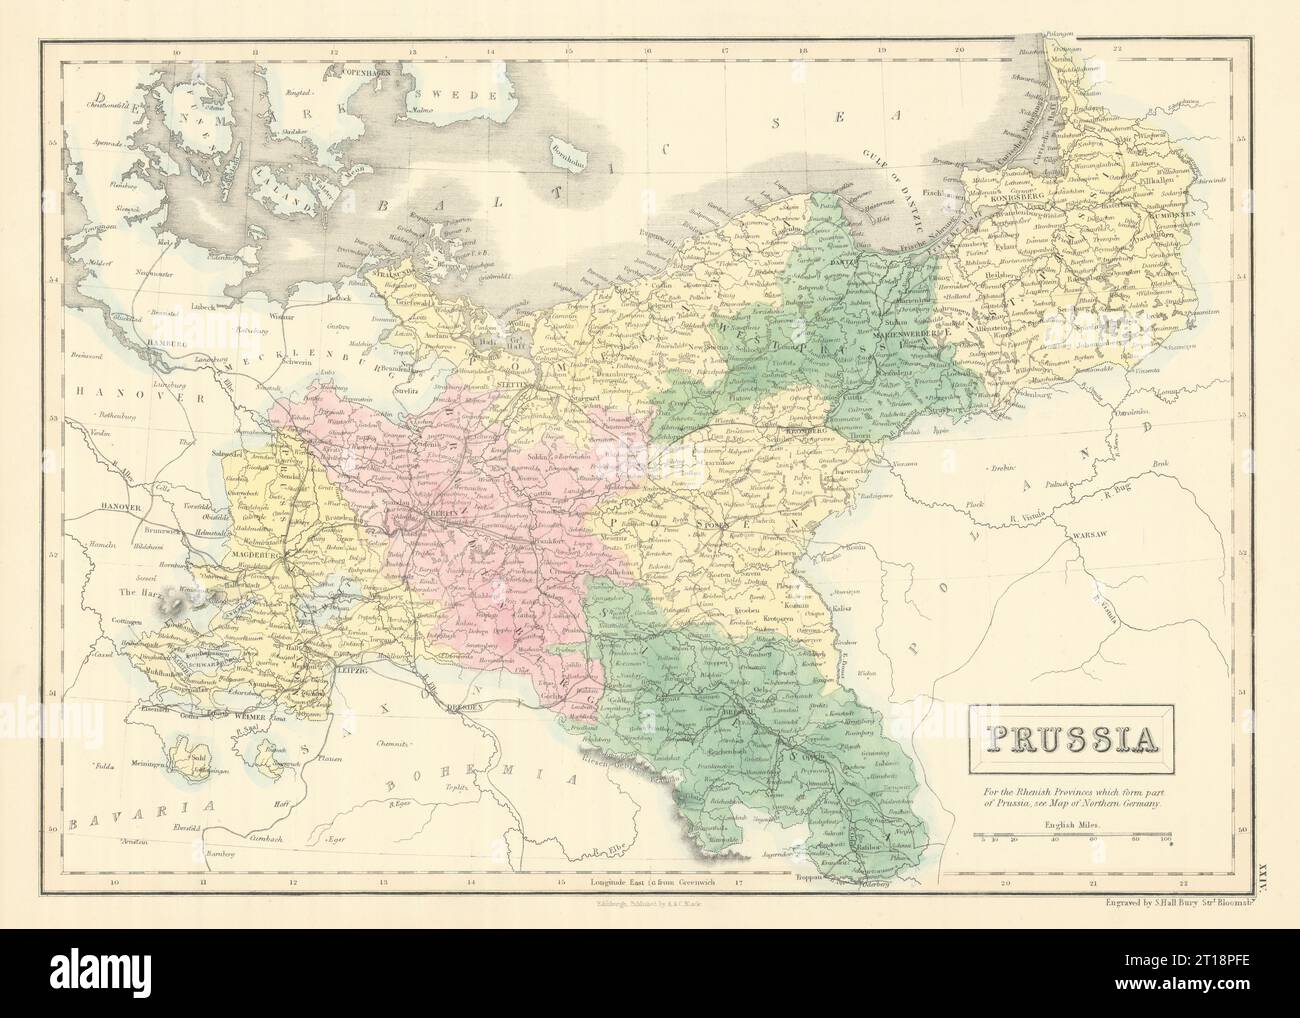 Prussia. Pomerania Poland Silesia Posen Brandenburg. SIDNEY HALL 1854 old map Stock Photo